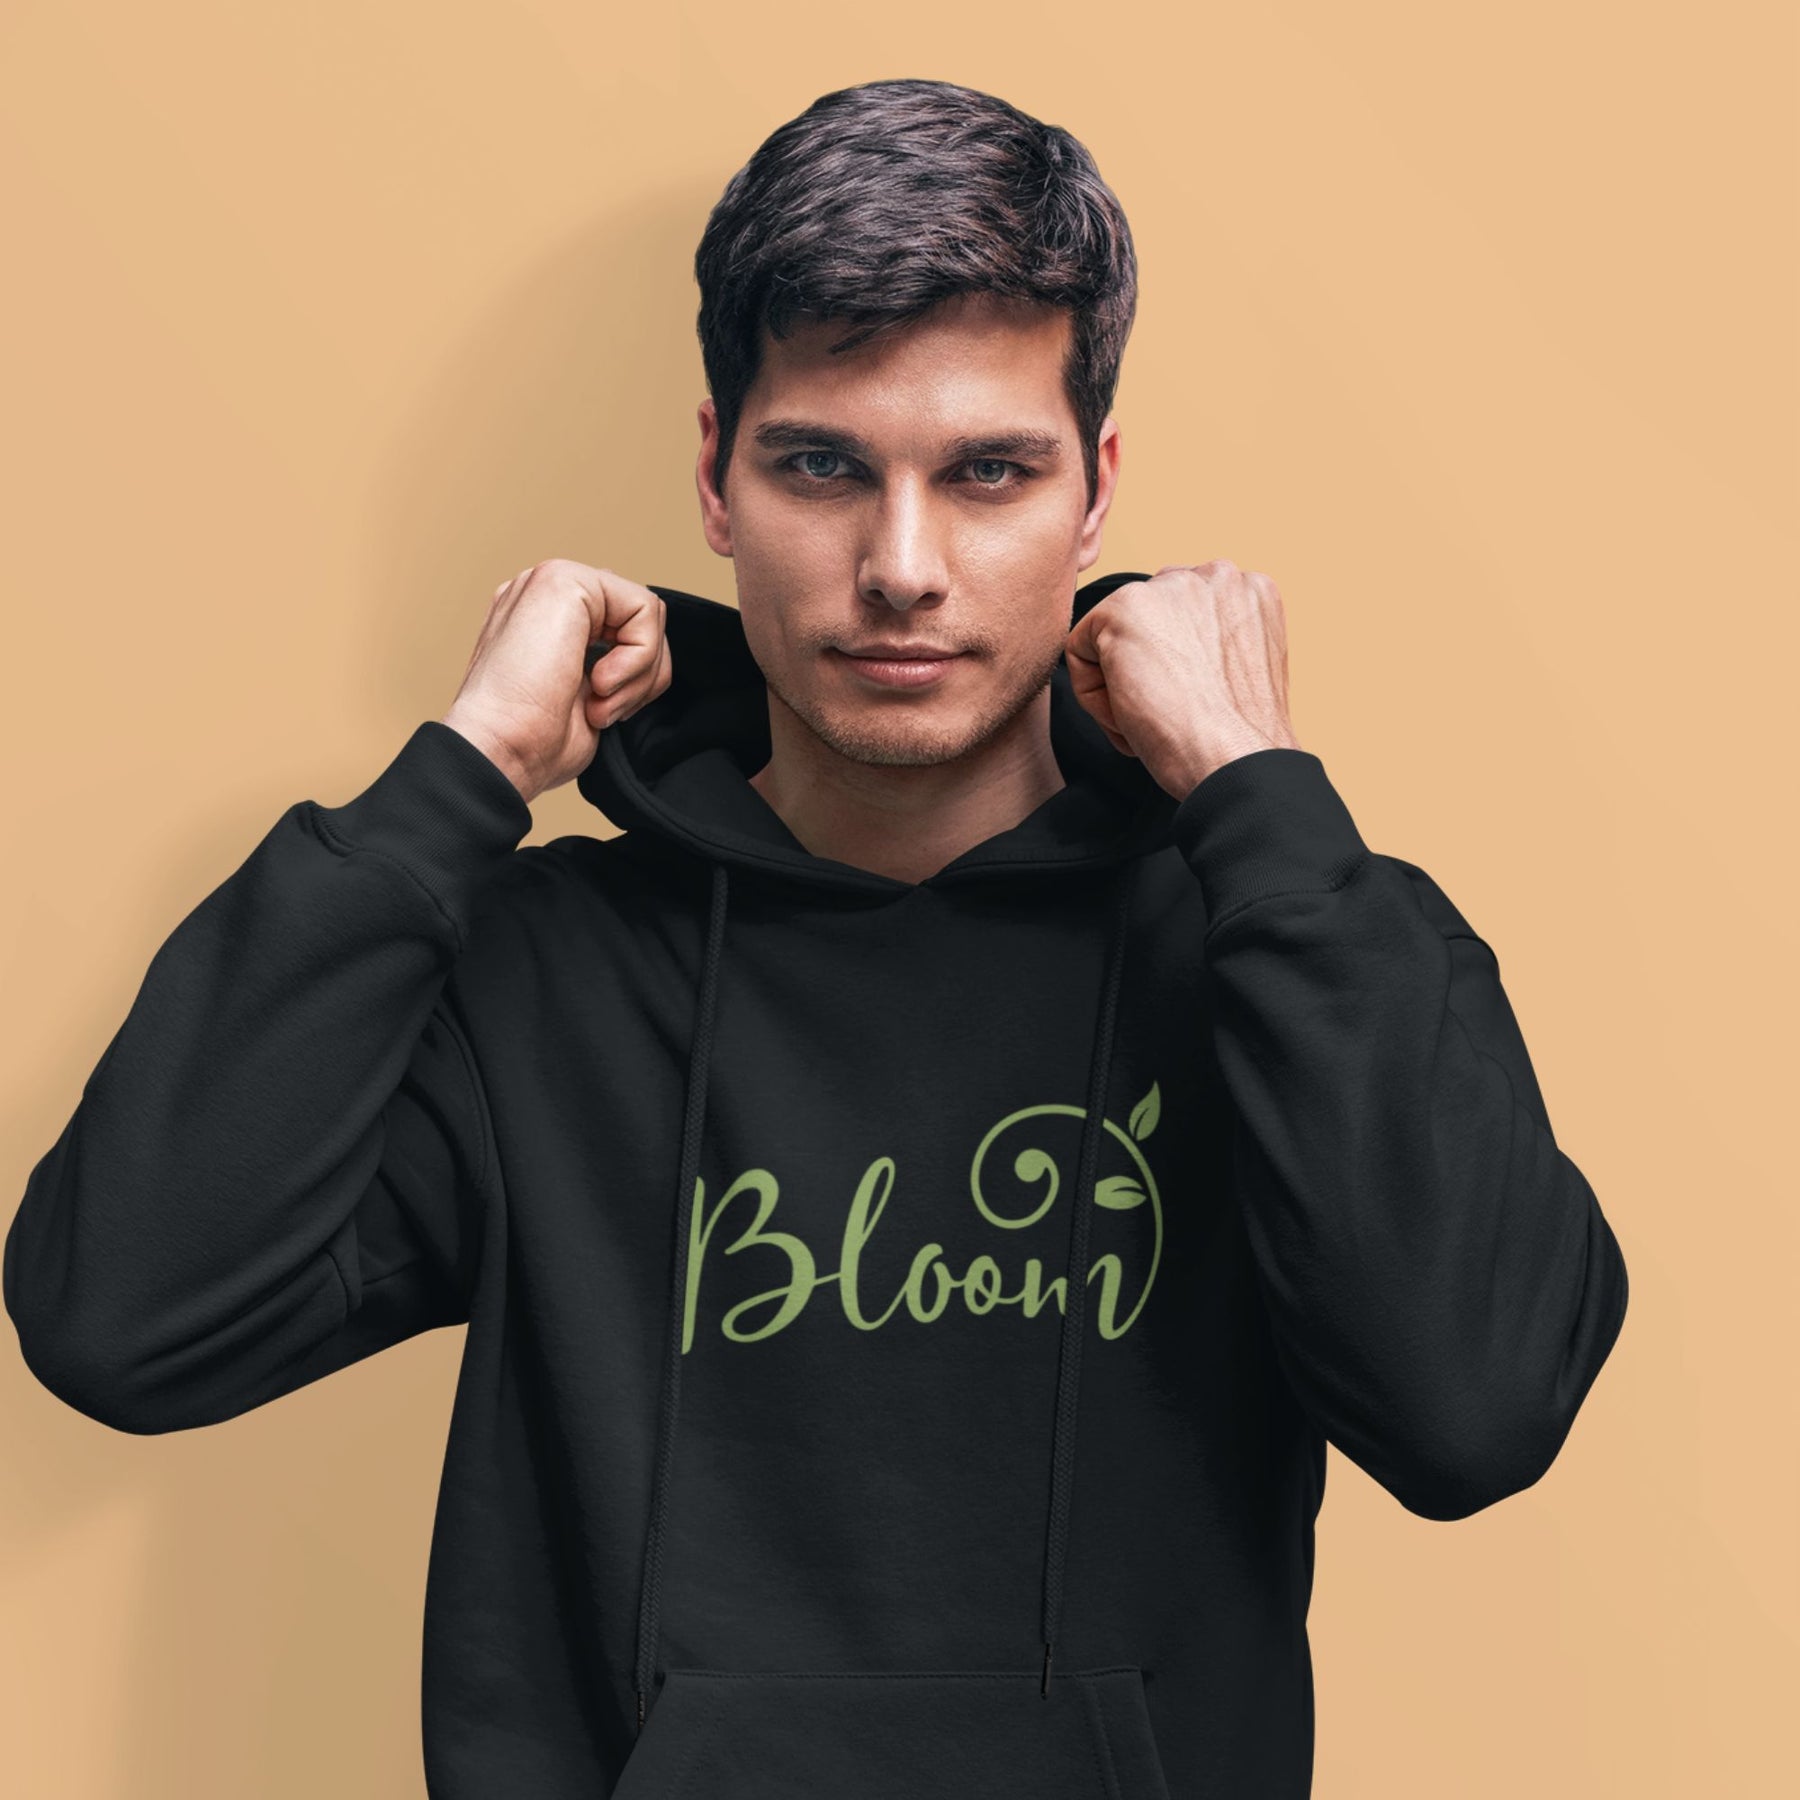     bloom-black-printed-unisex-hoodie-gogirgit-com